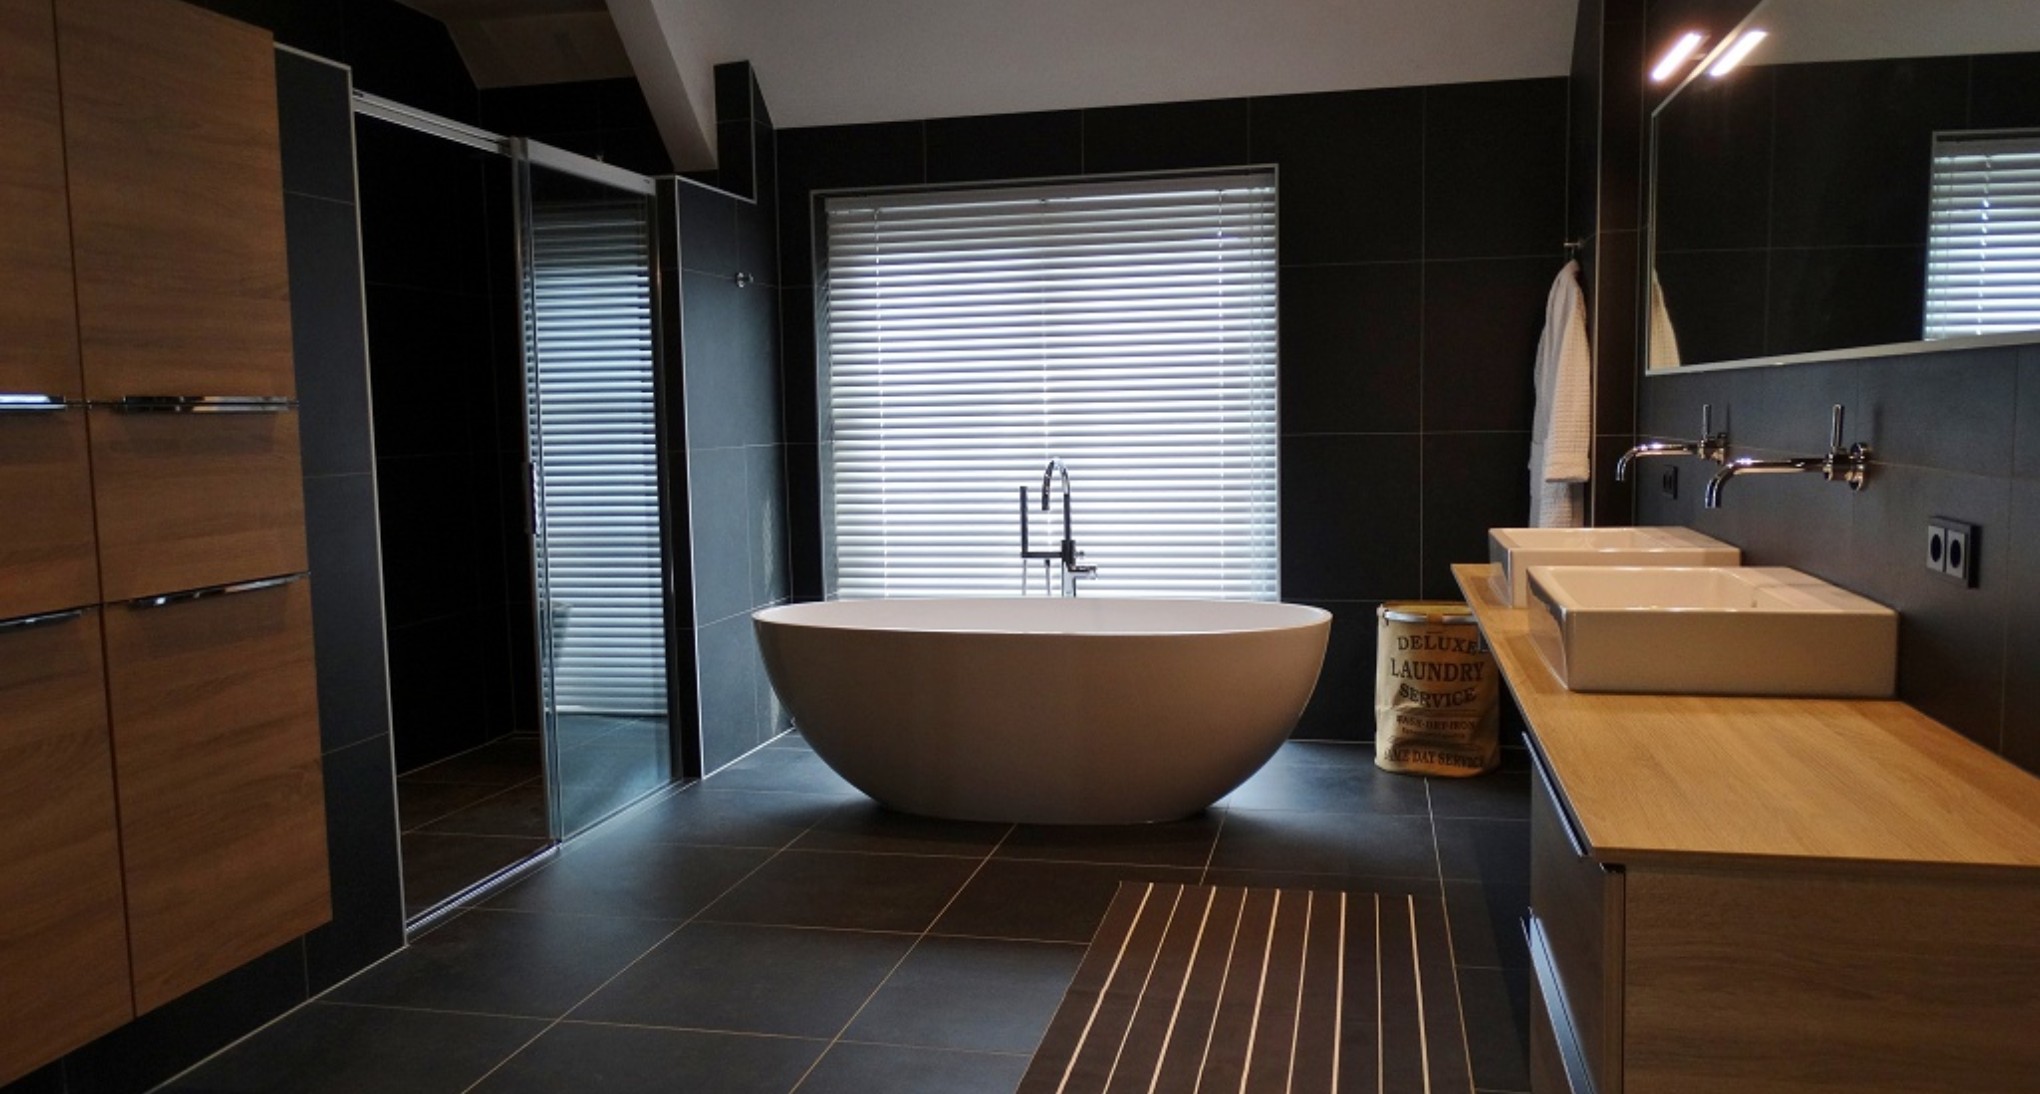 Badkamer voorzien van luxe materialen